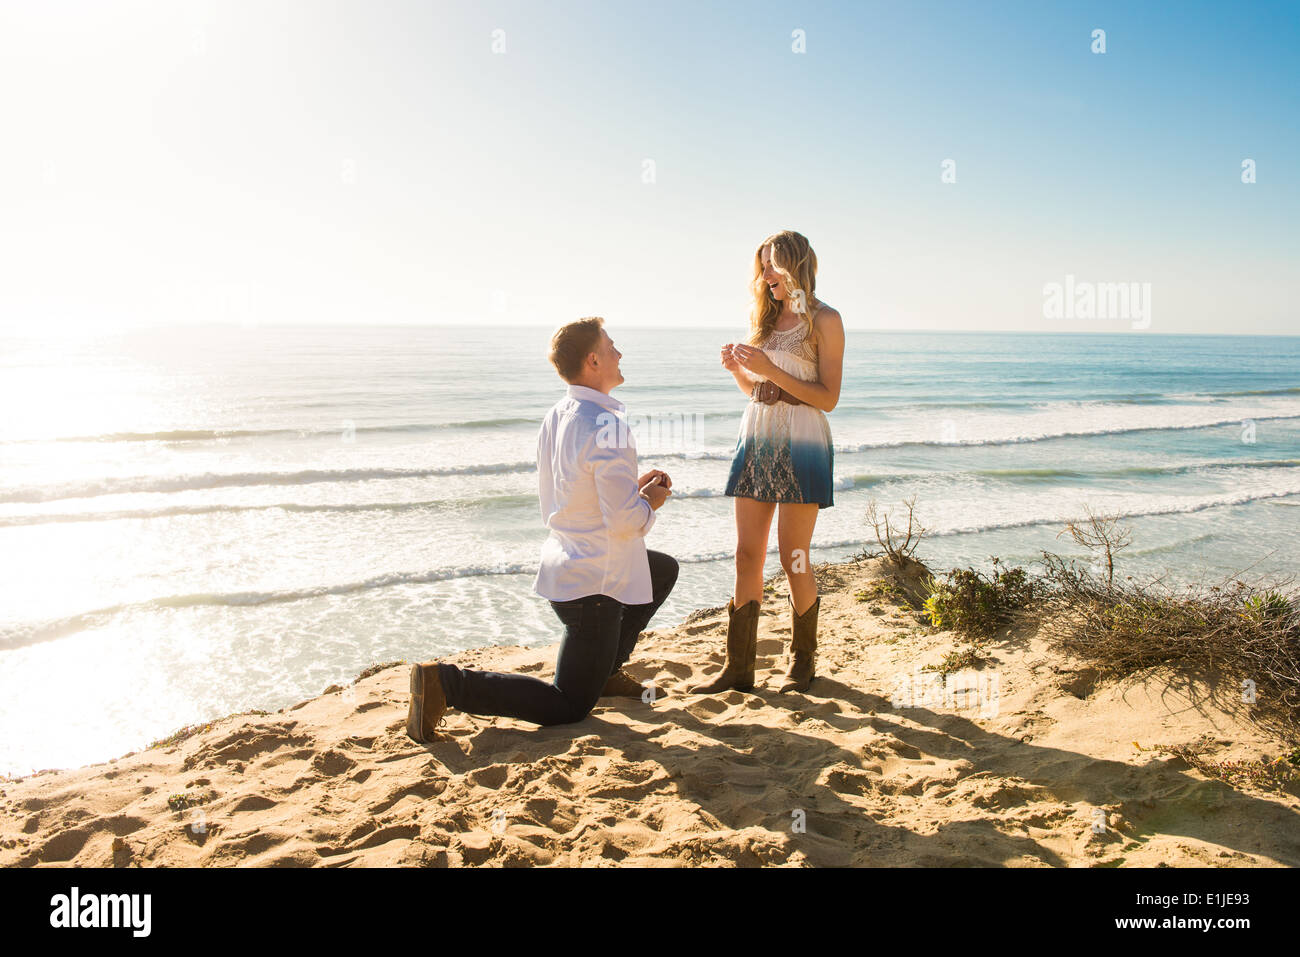 Giovane uomo propone la ragazza sulla spiaggia, Torrey Pines, San Diego, California, Stati Uniti d'America Foto Stock